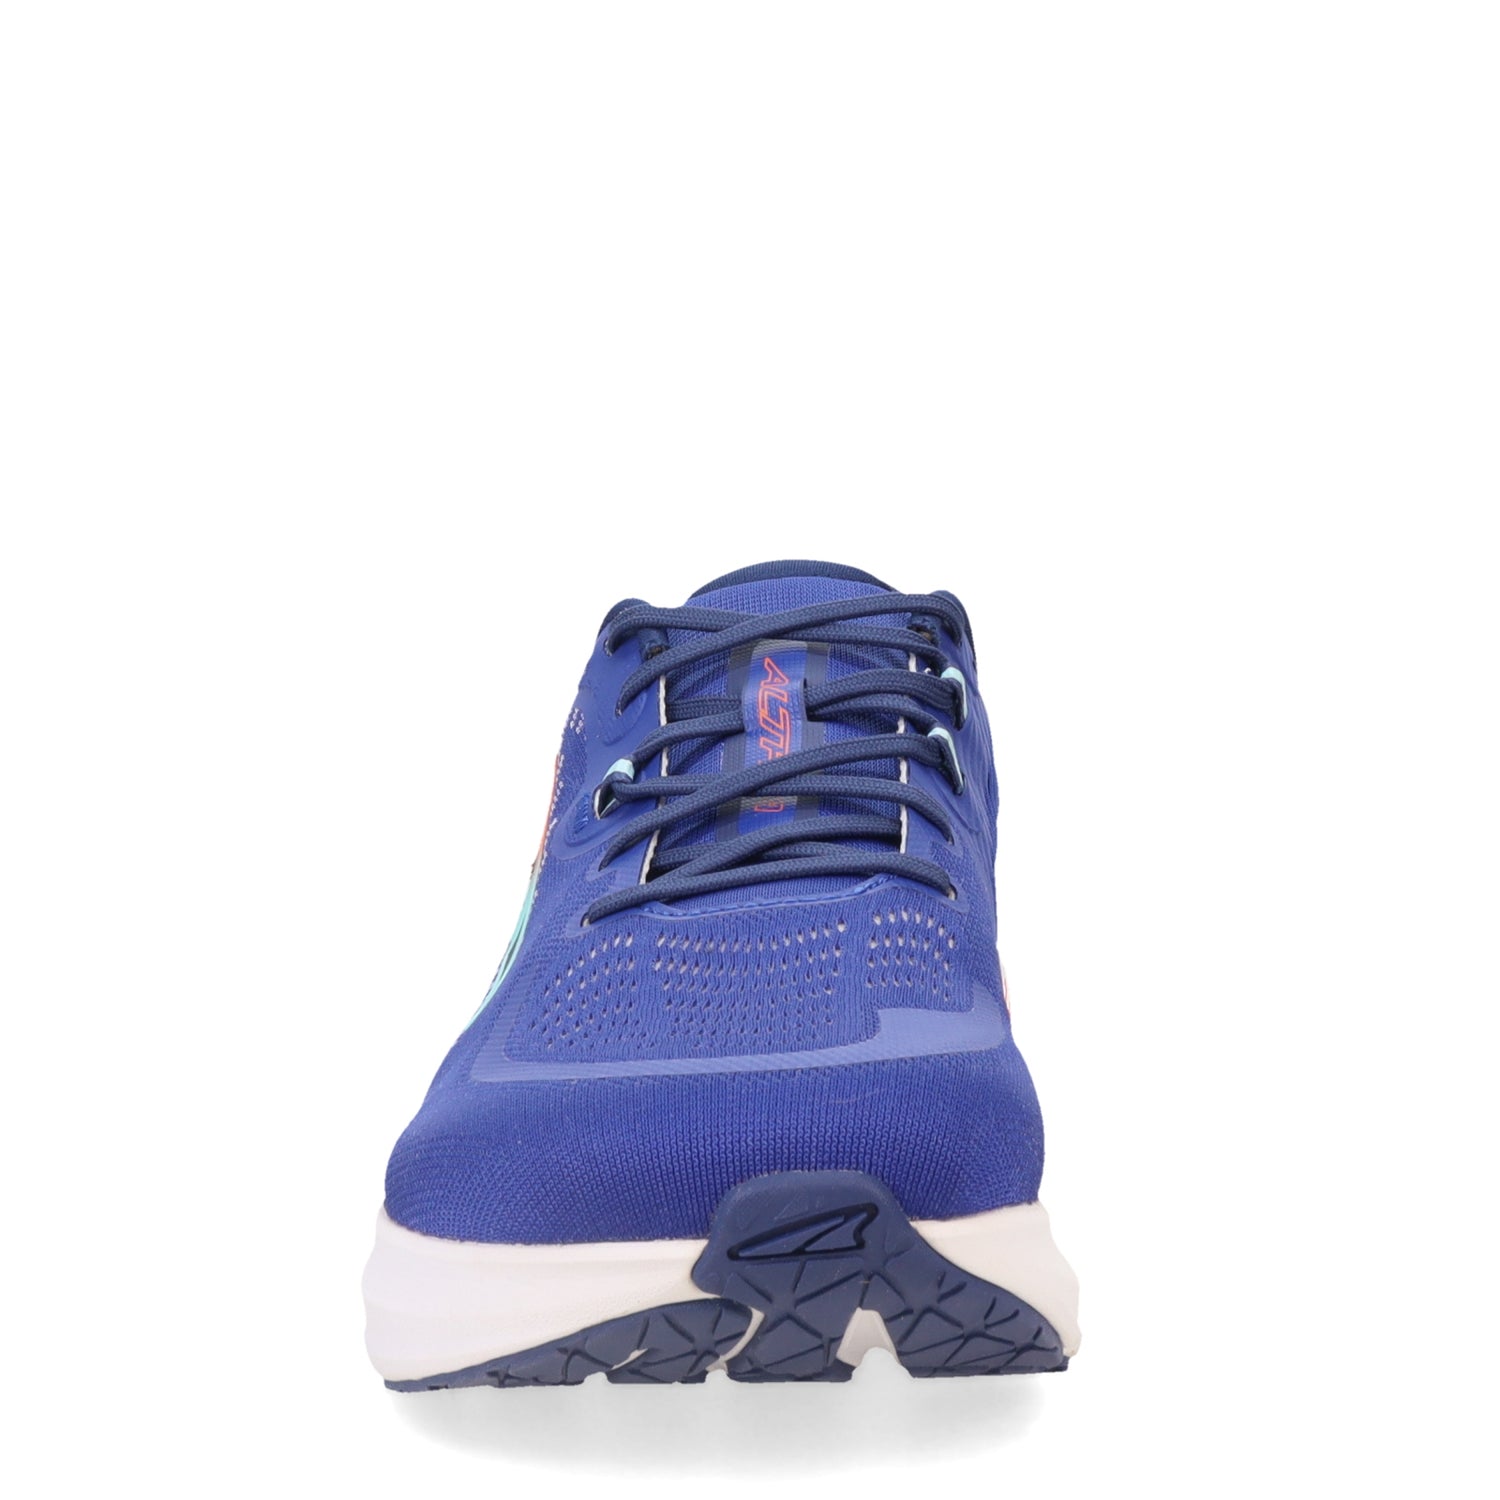 Peltz Shoes  Men's Altra Paradigm 7 Running Shoe - Wide Width BLUE AL0A82CE-440